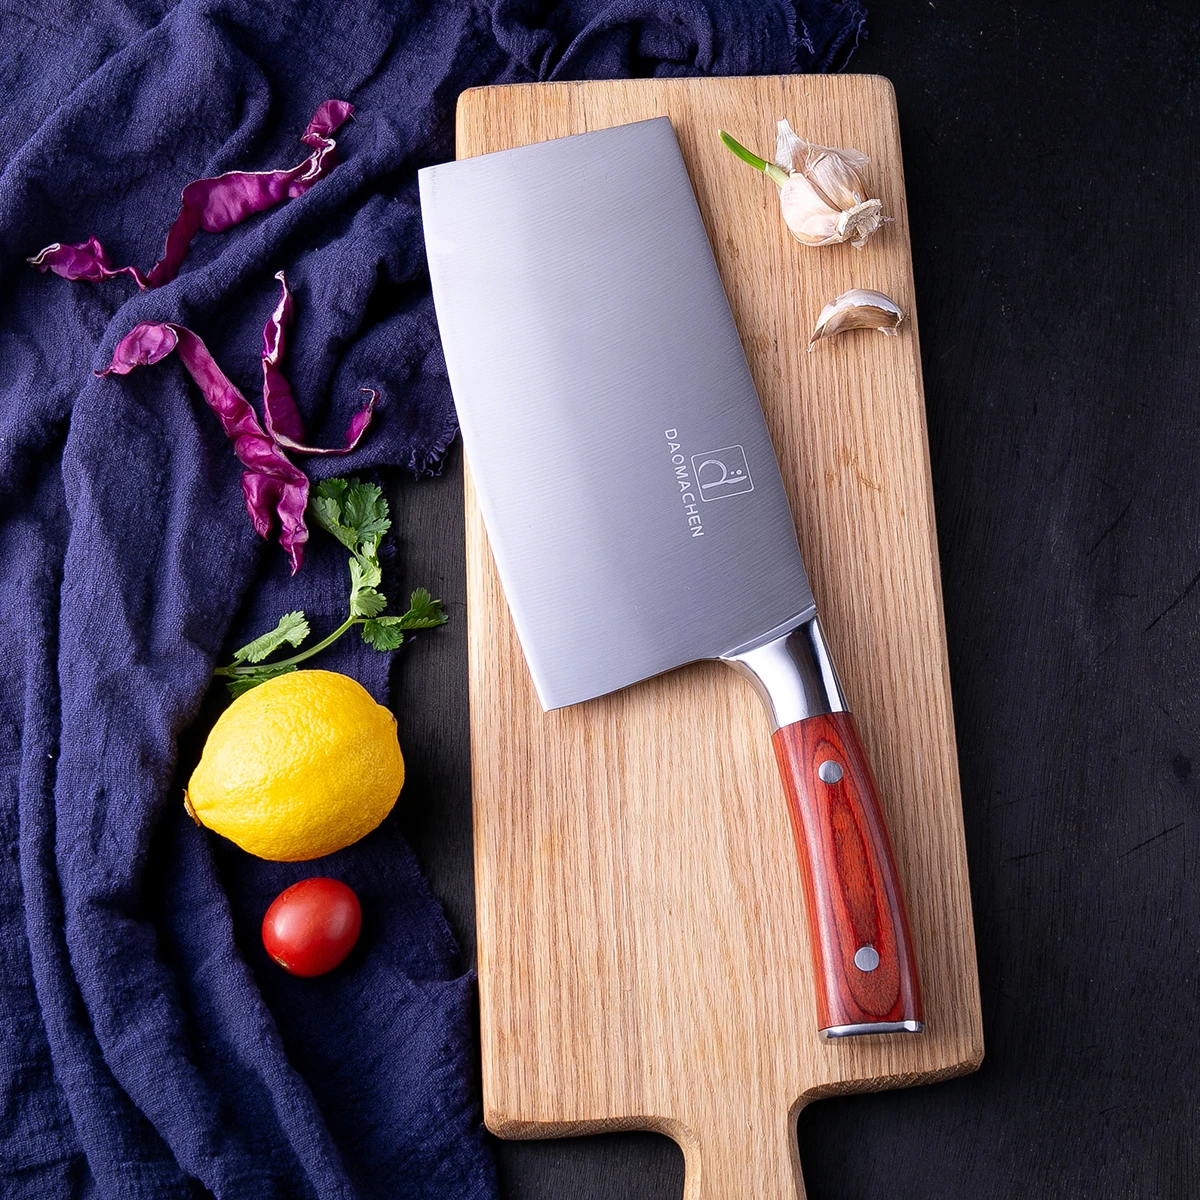 DAOMACHEN нож шеф-повара из нержавеющей стали, острые японские кухонные ножи, для мяса, фруктов, овощей, Cuter, Кливер, инструменты для приготовления пищи